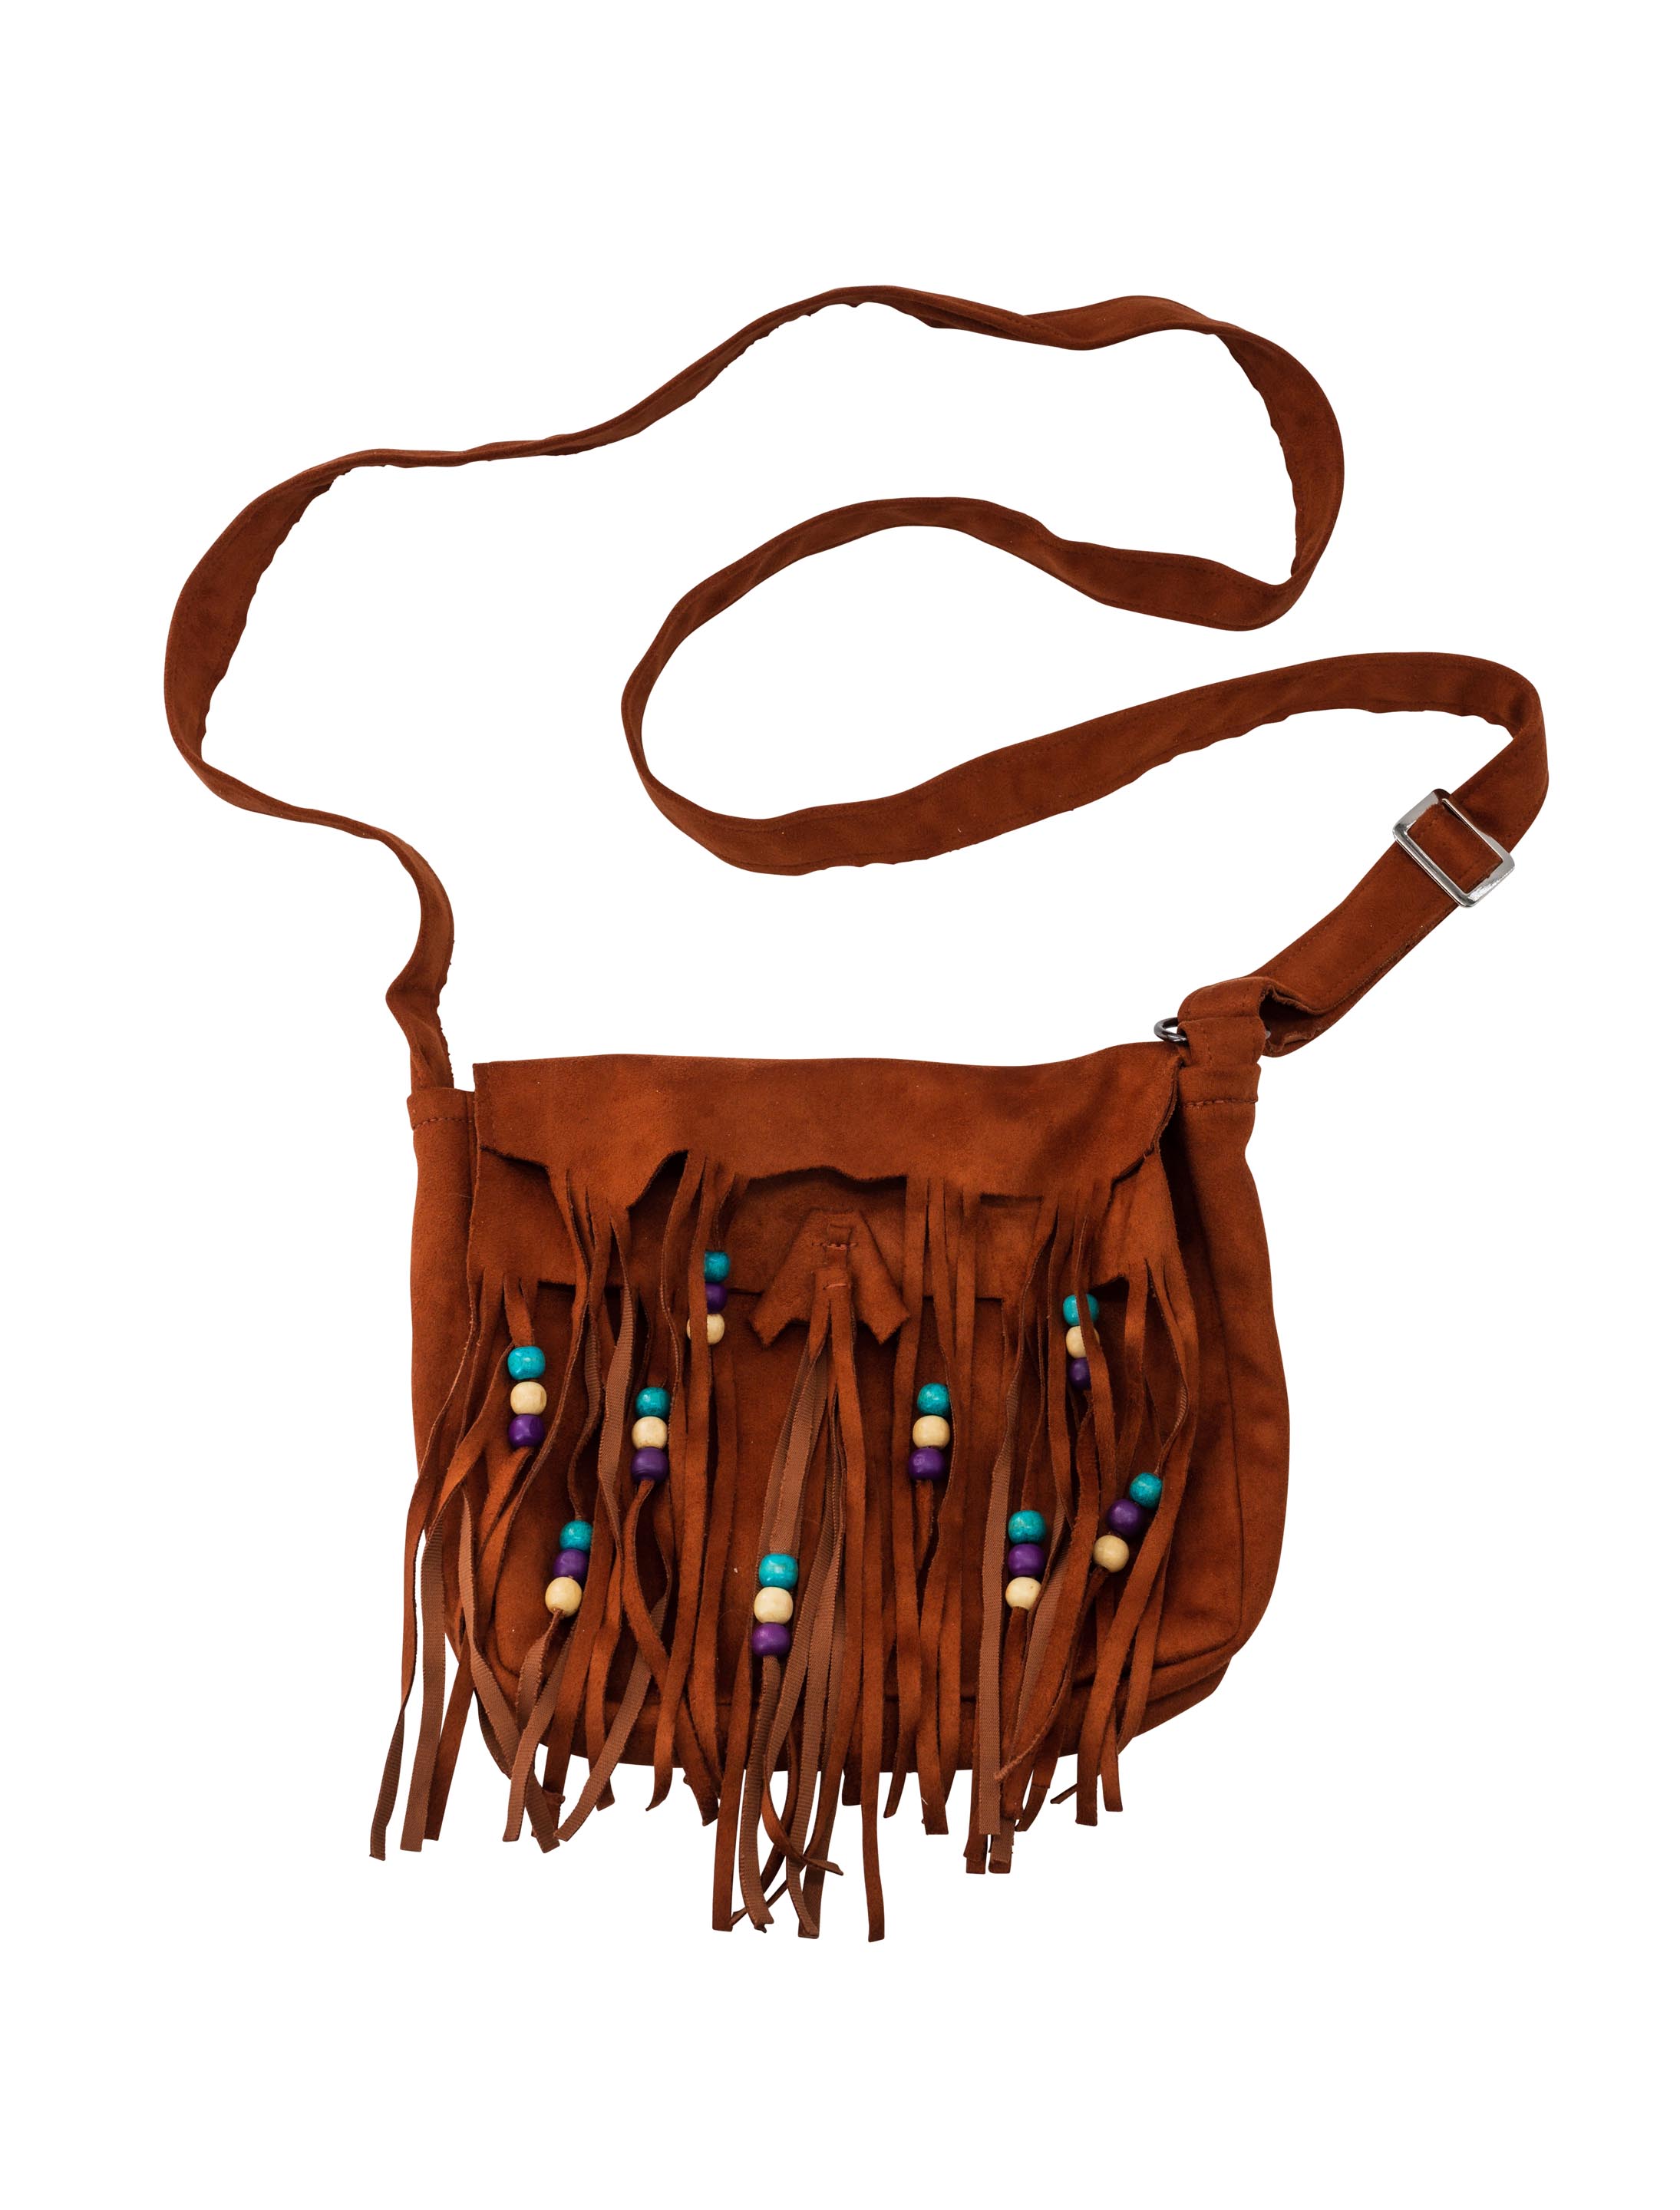 Tasche Indianer braun mit Perlen